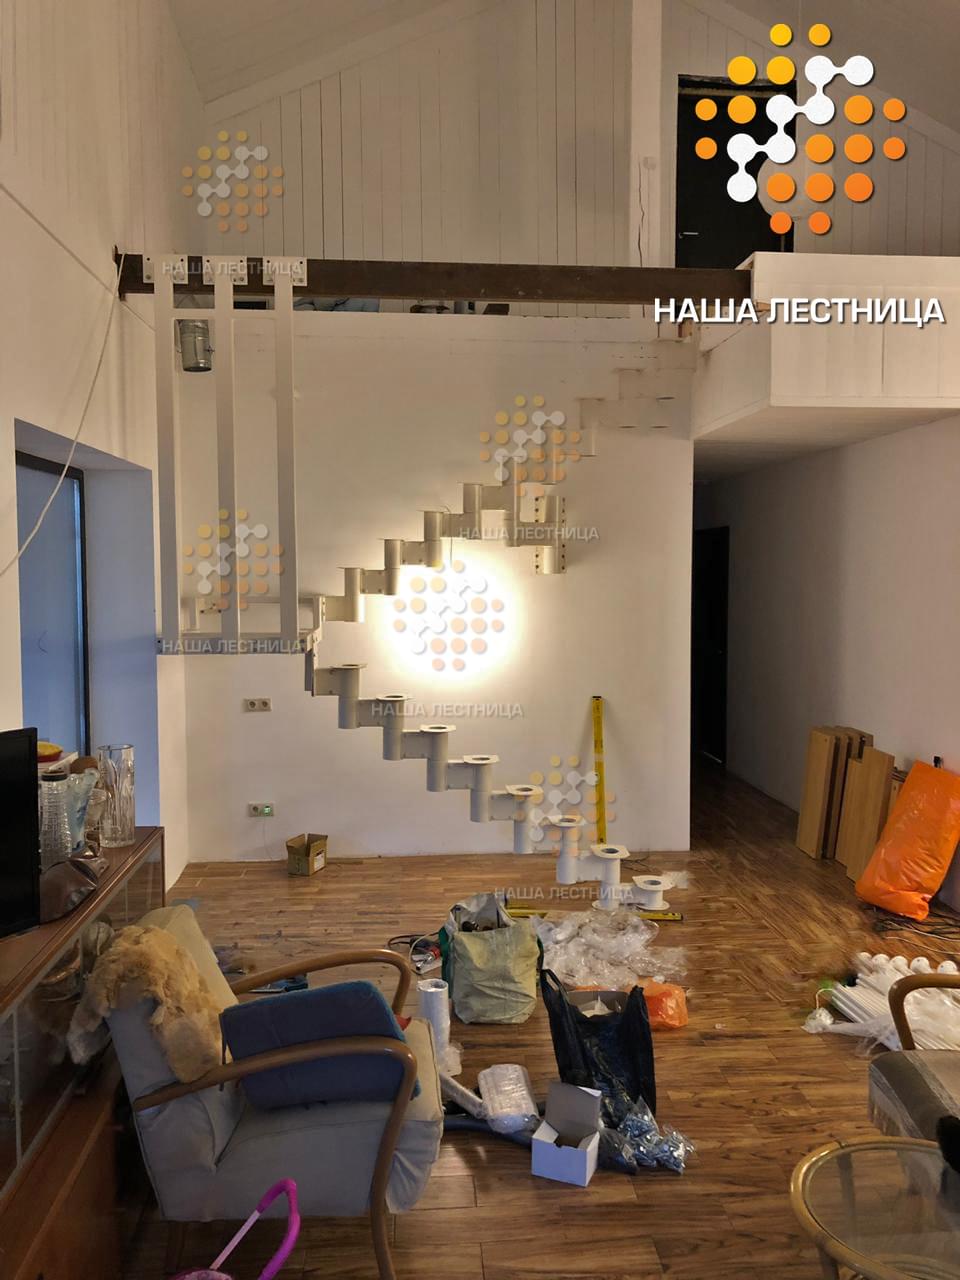 Фото модульная лестница для дома с эксклюзивной поворотной площадкой на 180 градусов - вид 2